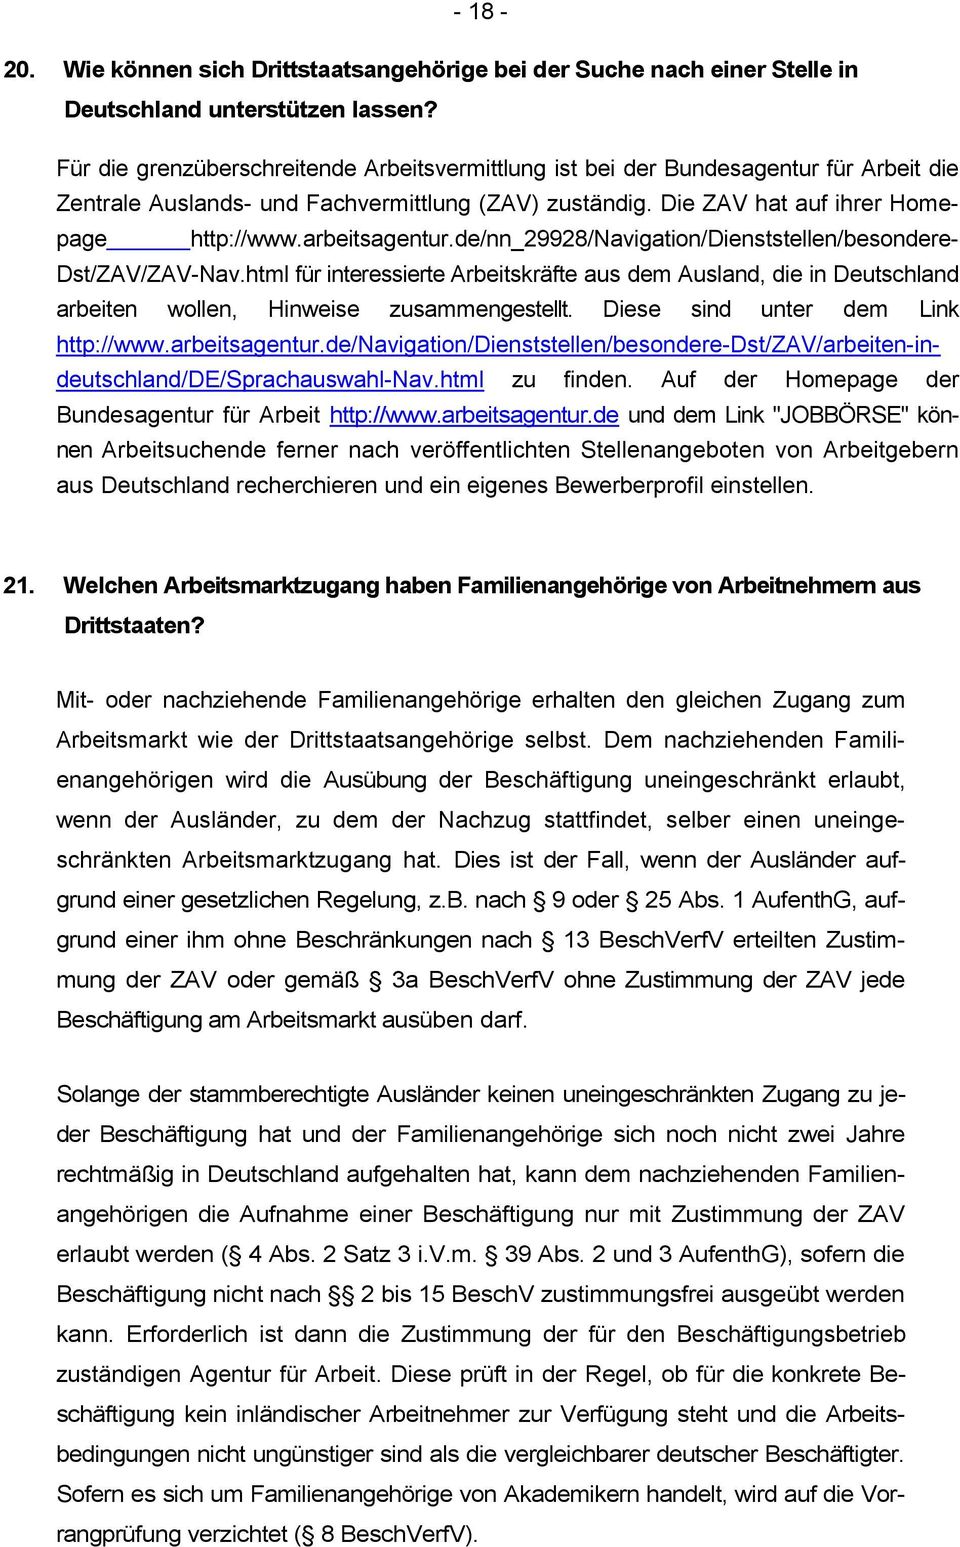 arbeitsagentur.de/nn_29928/navigation/dienststellen/besondere- Dst/ZAV/ZAV-Nav.html für interessierte Arbeitskräfte aus dem Ausland, die in Deutschland arbeiten wollen, Hinweise zusammengestellt.